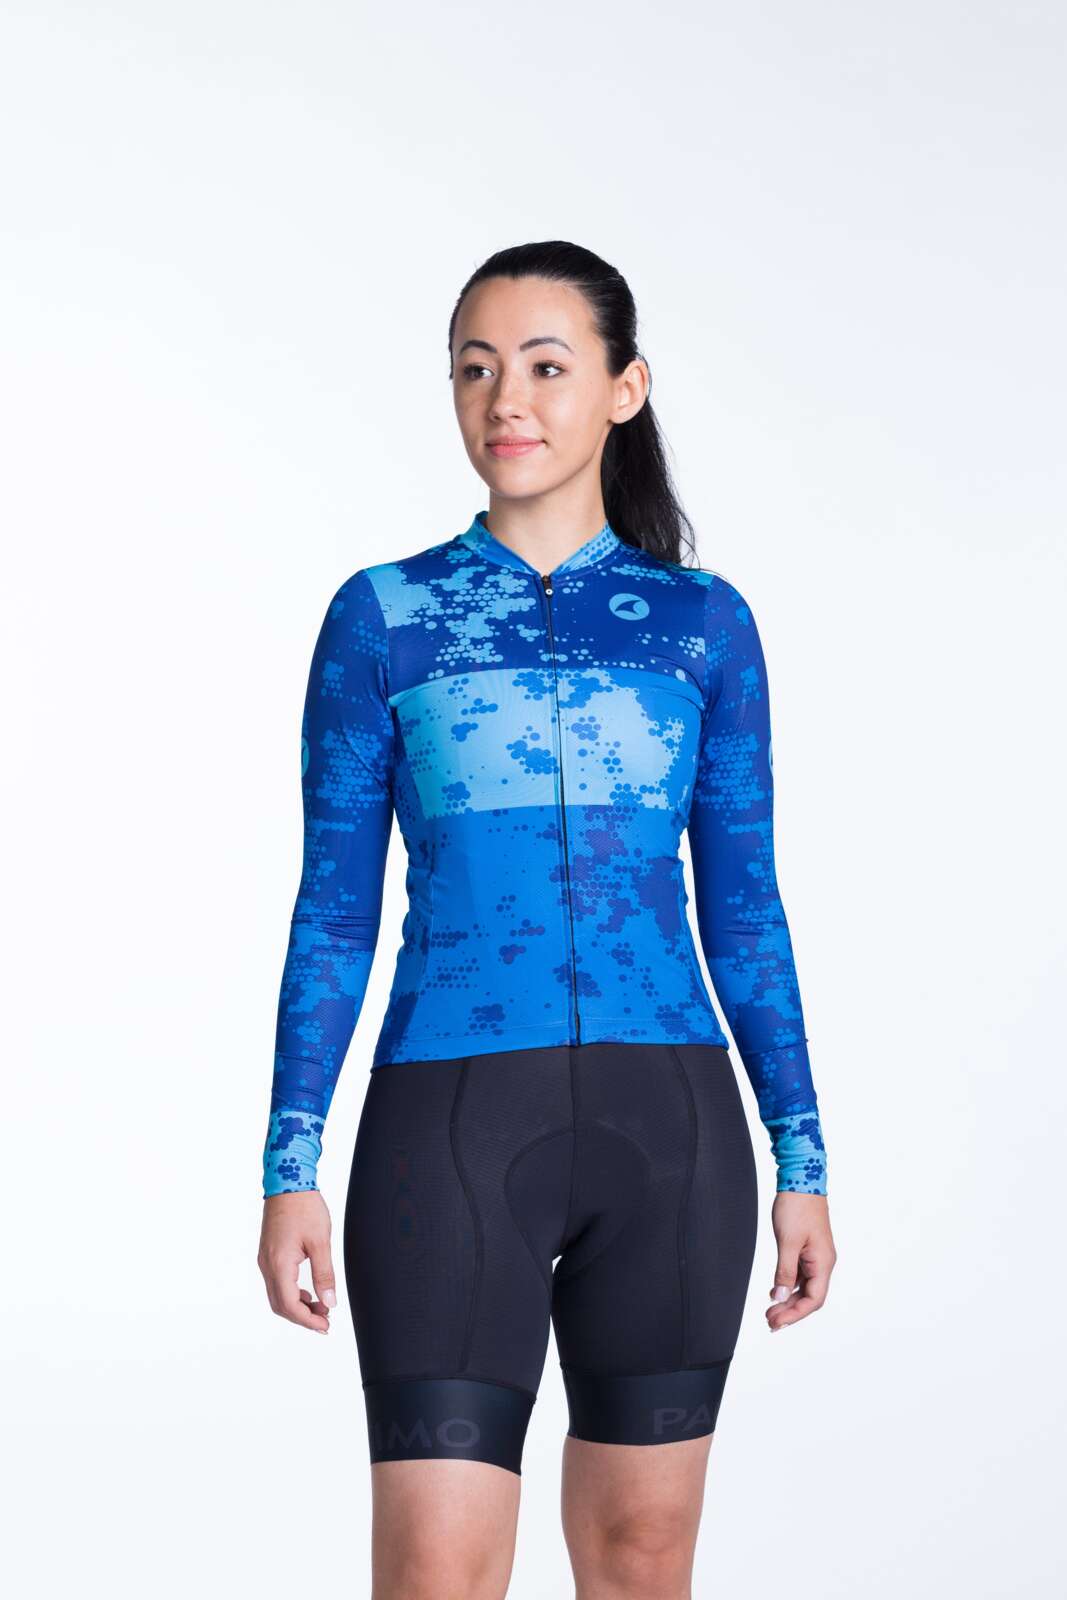 Women's Aero Long Sleeve Cycling Jersey Design